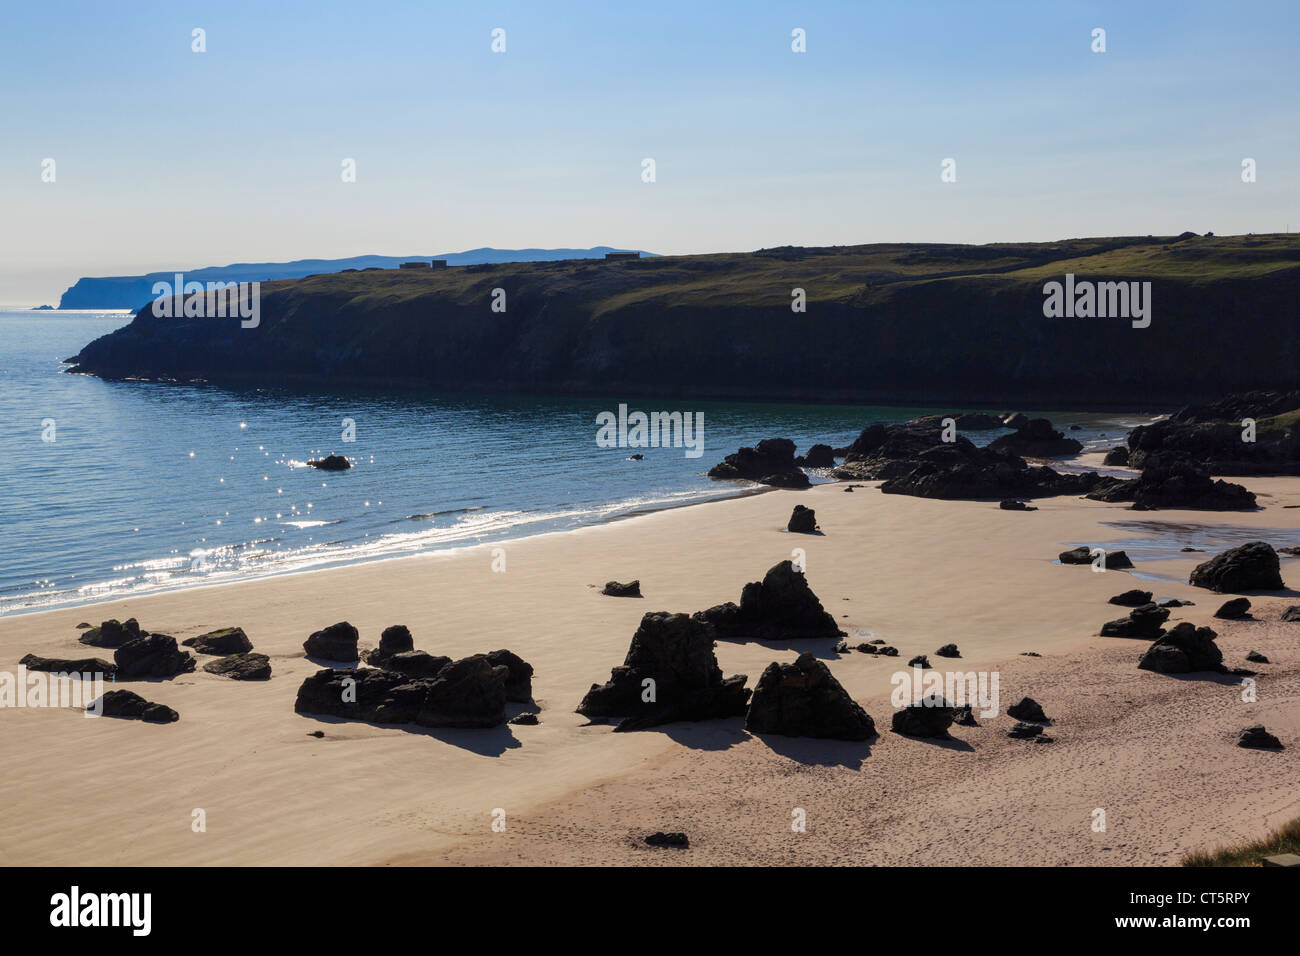 Stagliano rocce su vuoto spiaggia sabbiosa con un mare scintillante in prima mattinata a Sango Bay Durness Sutherland Highland Scozia UK Foto Stock